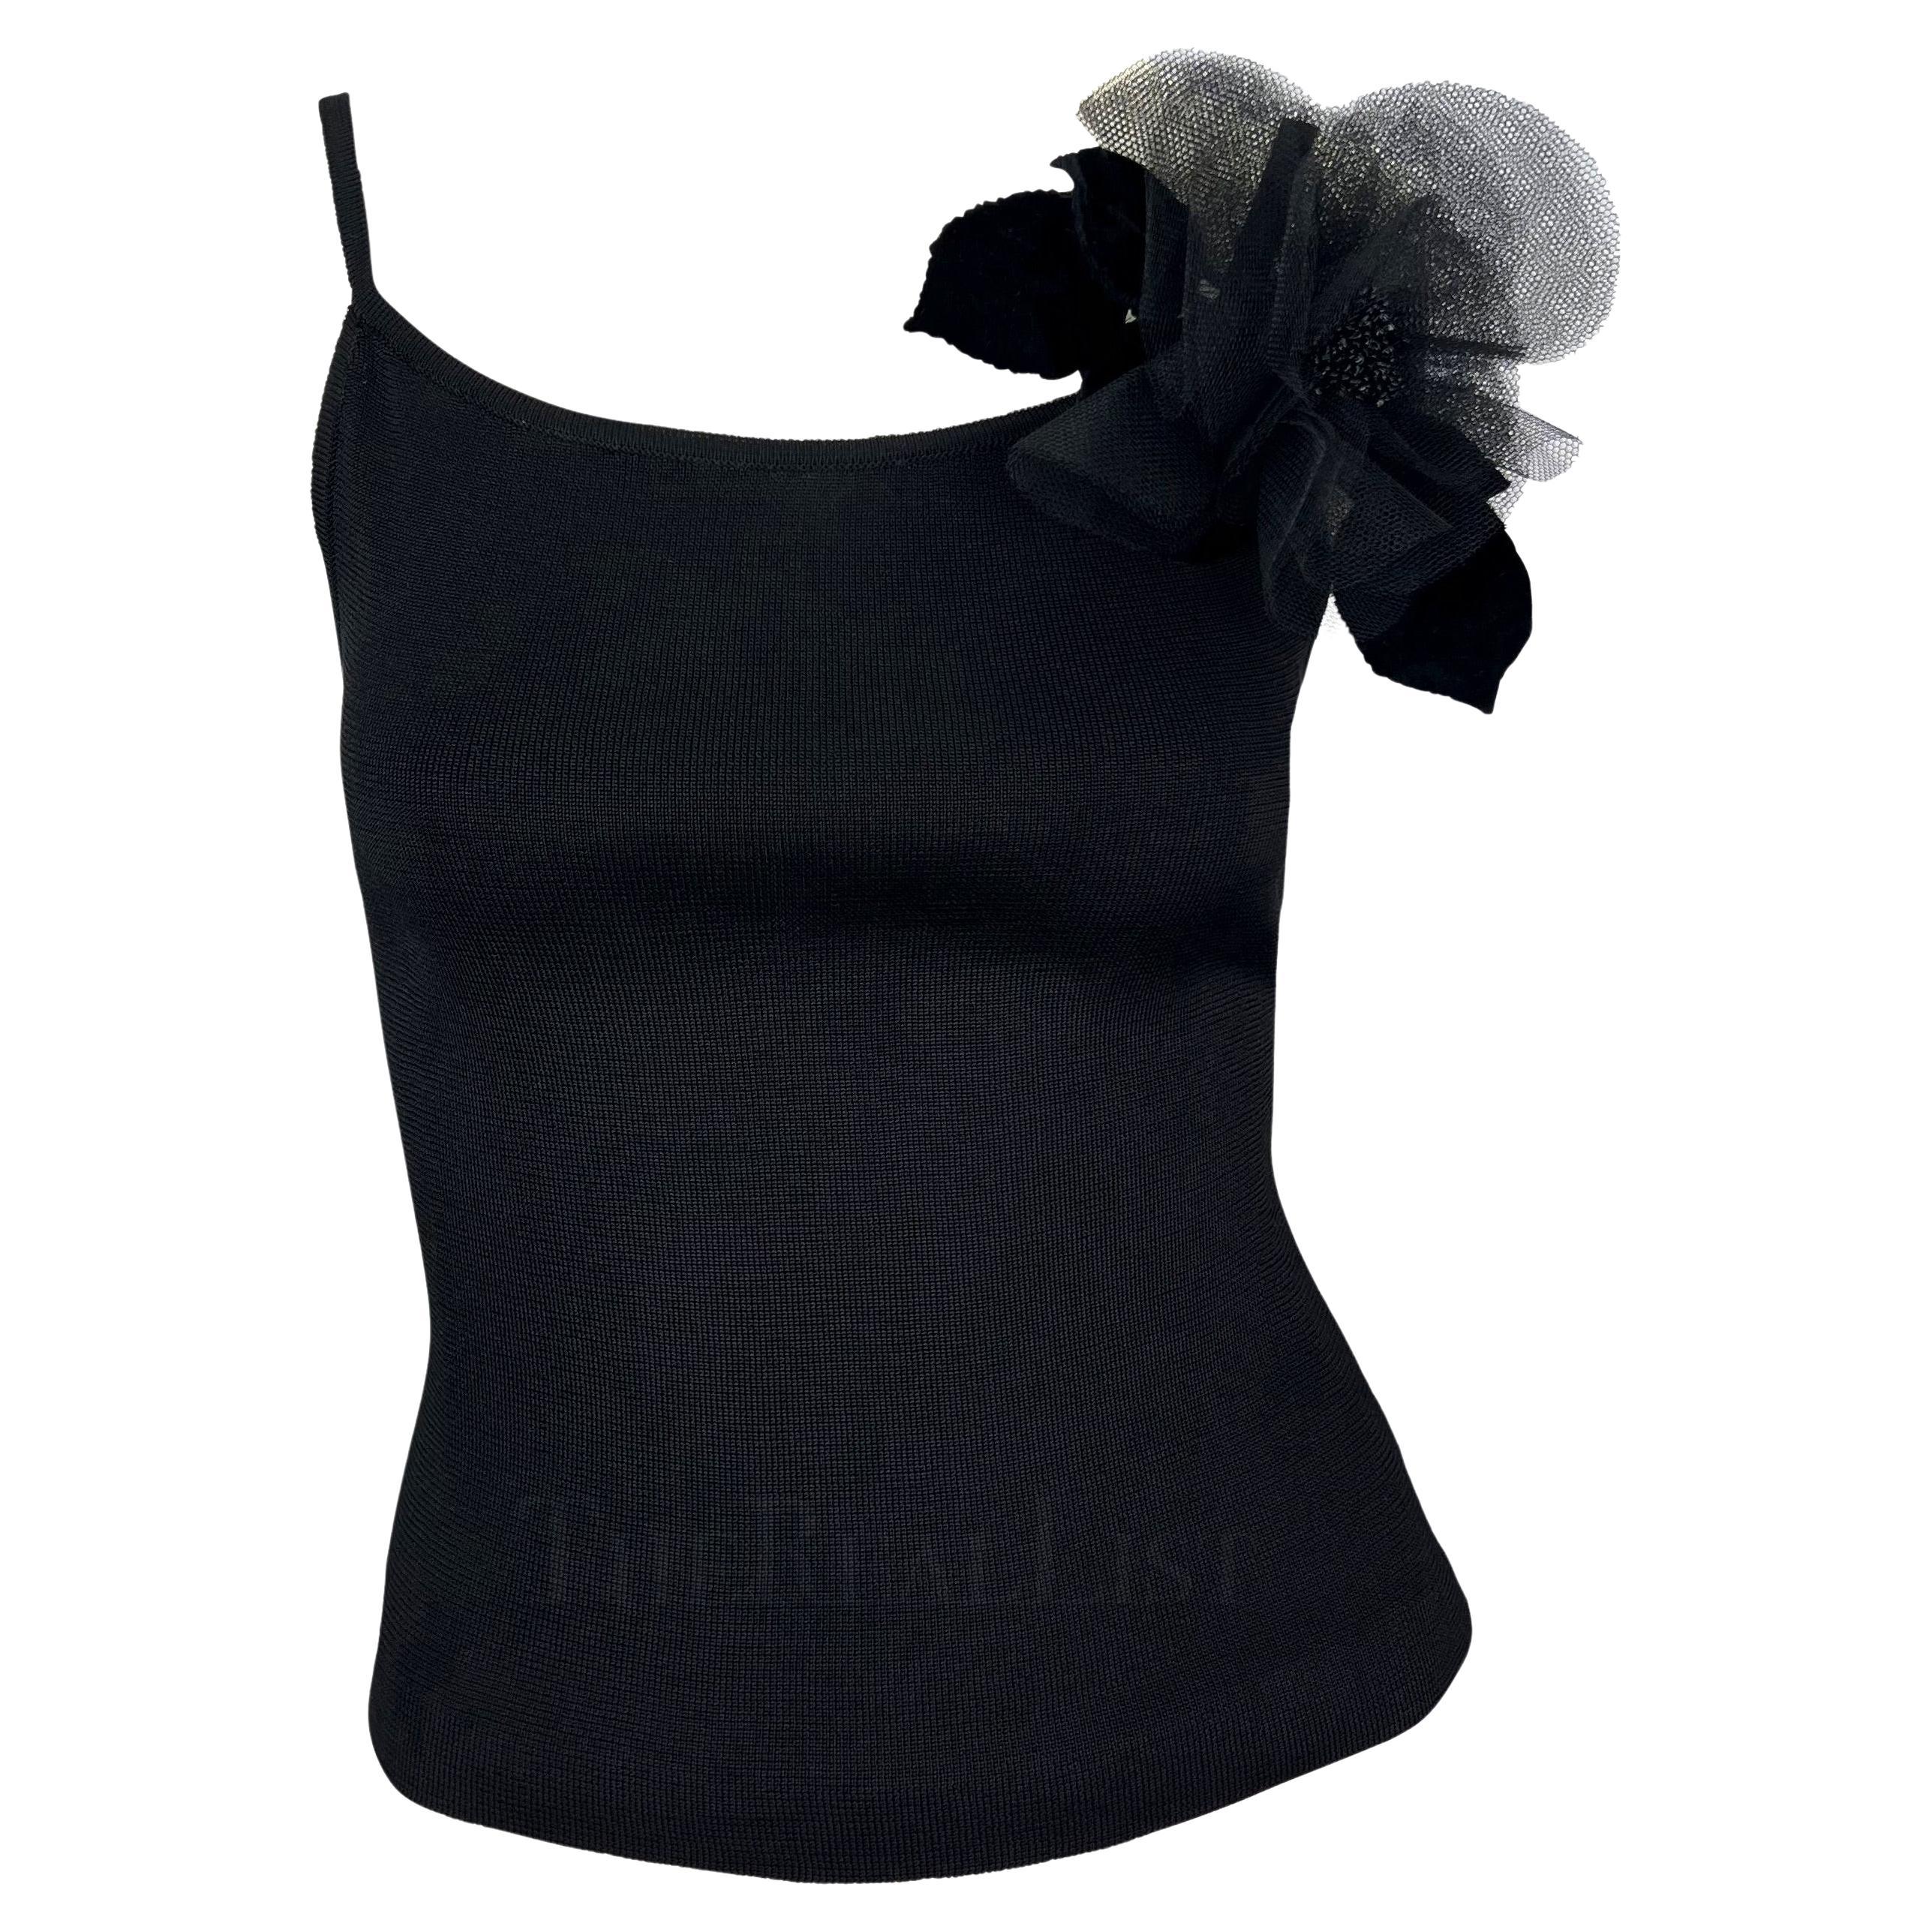 1990s Yves Saint Laurent Black Knit Floral Applique Tank Top For Sale